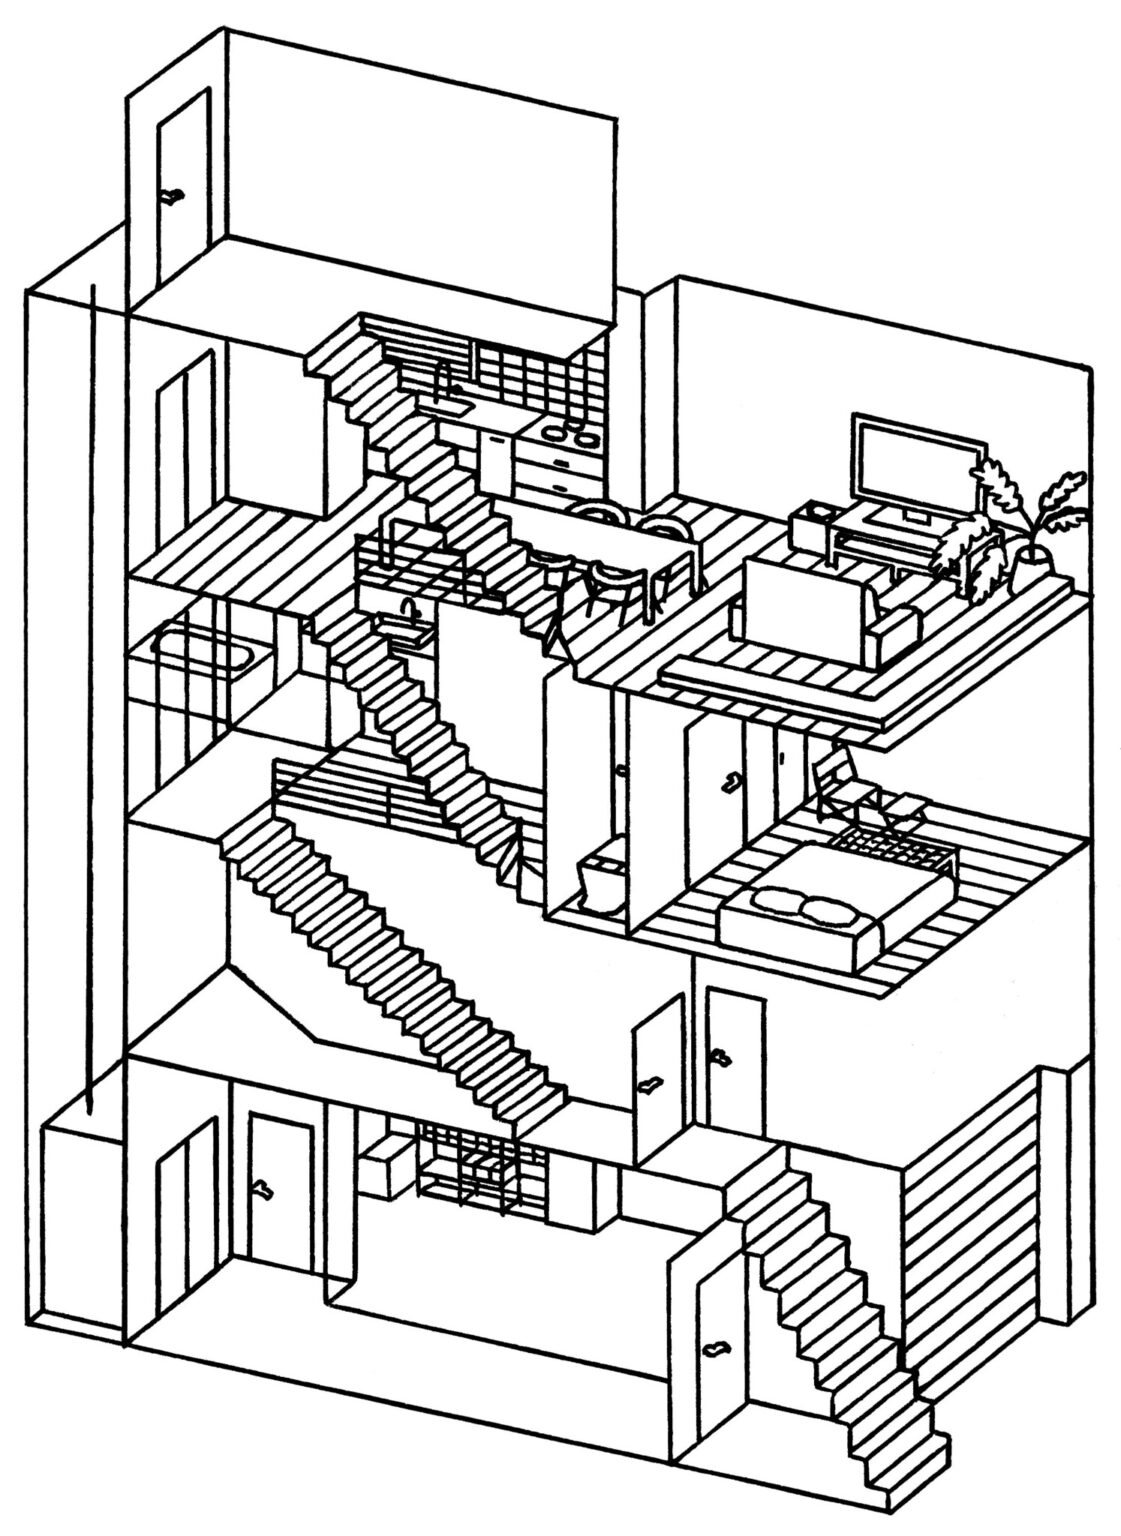 築29年、鉄筋コンクリート4階建て。現在、2階のテナント以外は、大津さん夫妻が使用している。3階に住居の玄関、バスルームと寝室がある。屋上の使い道も考え中。